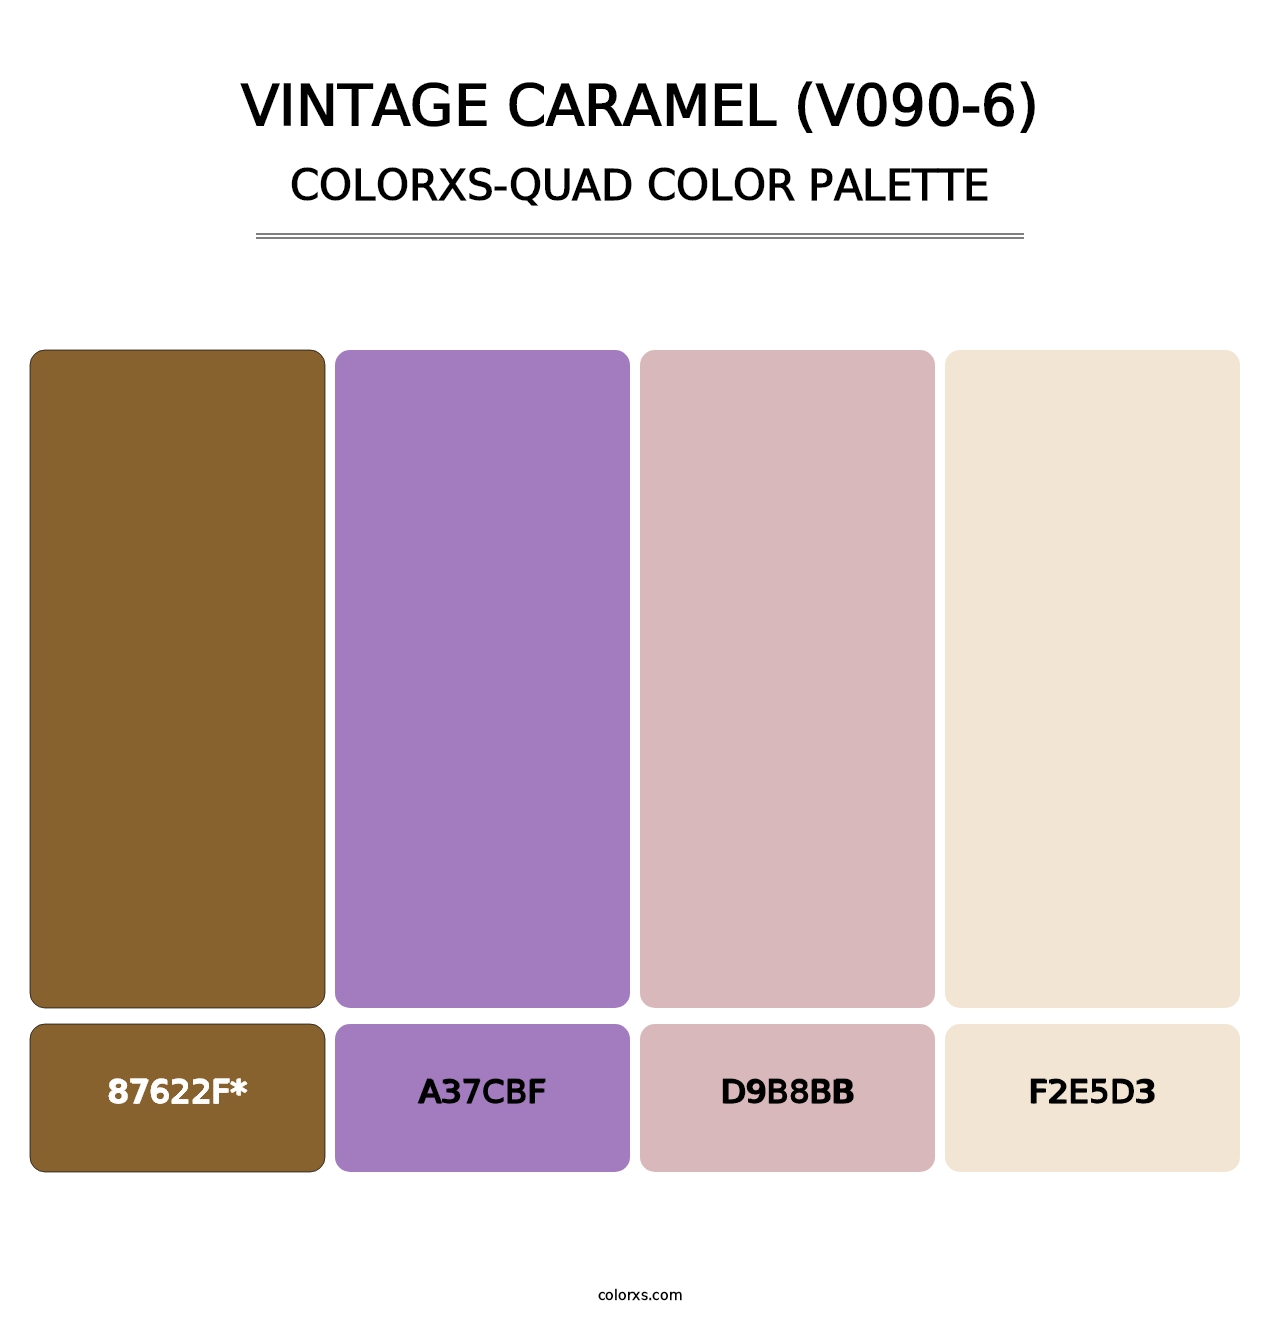 Vintage Caramel (V090-6) - Colorxs Quad Palette